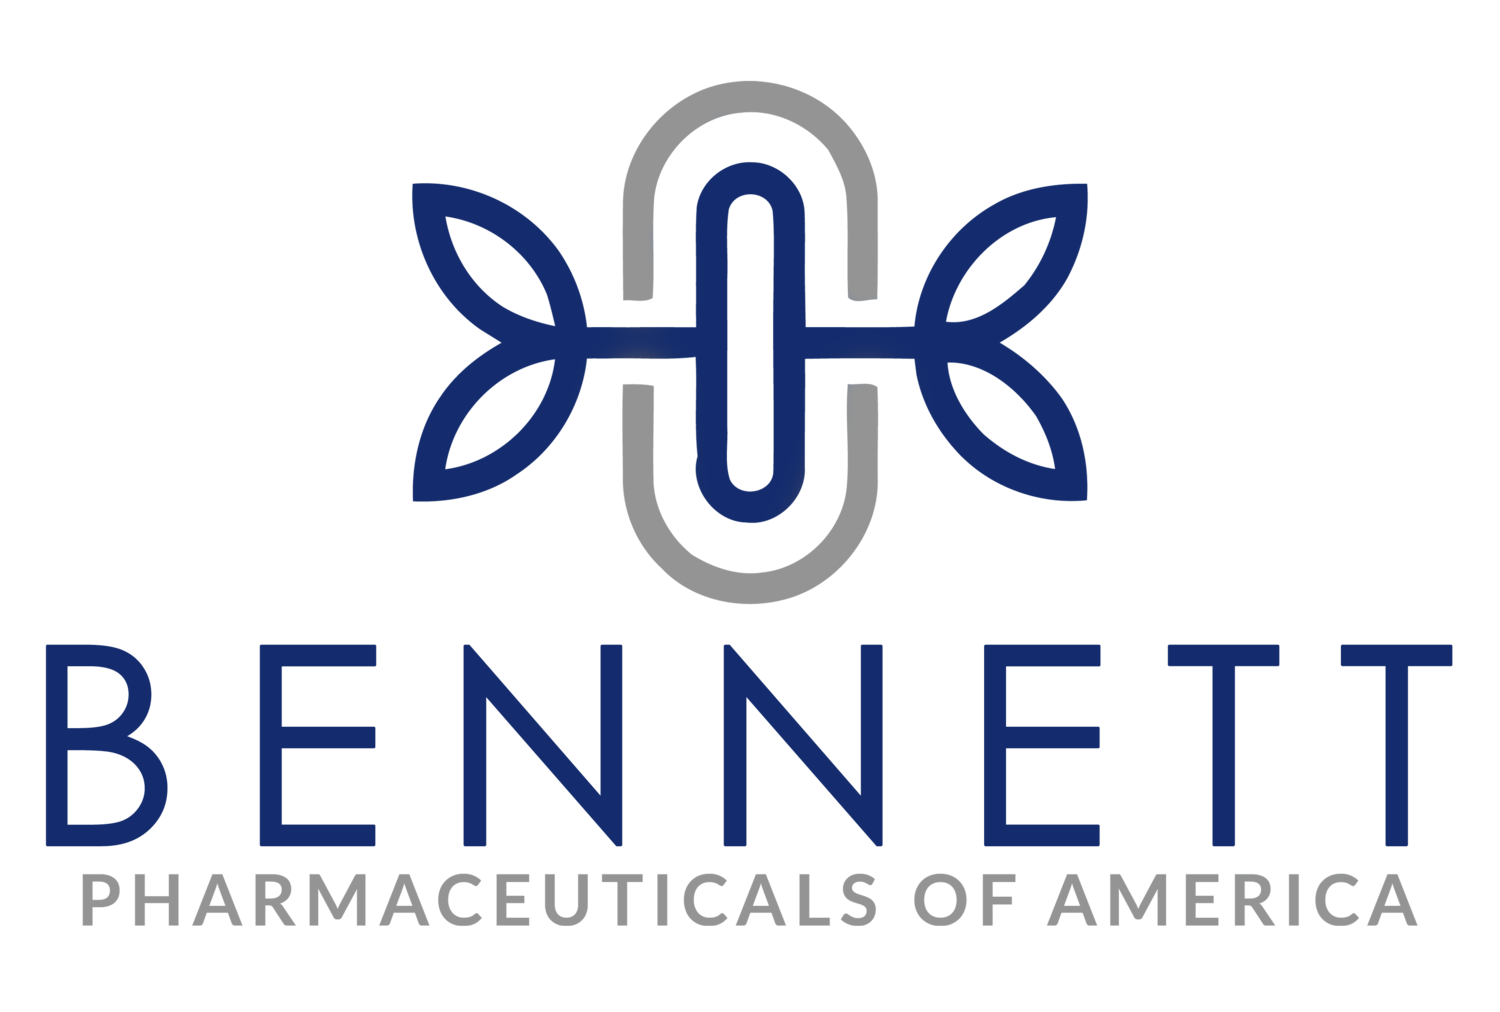 Bennett Pharmaceuticals of America